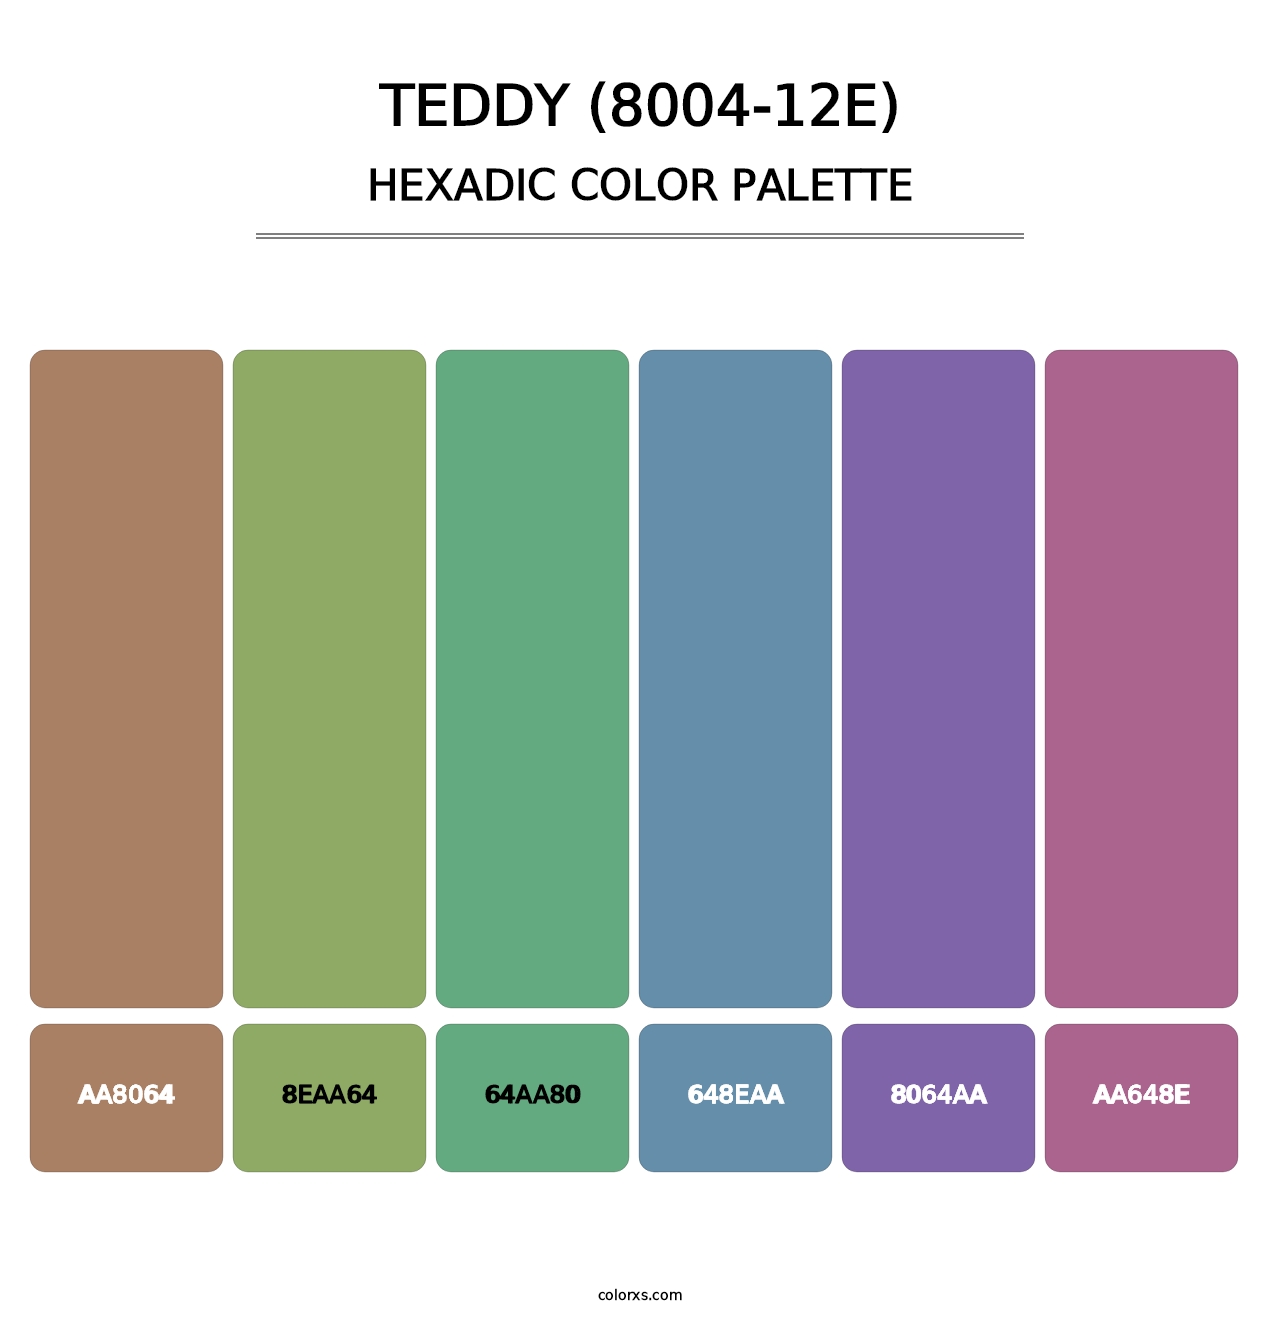 Teddy (8004-12E) - Hexadic Color Palette